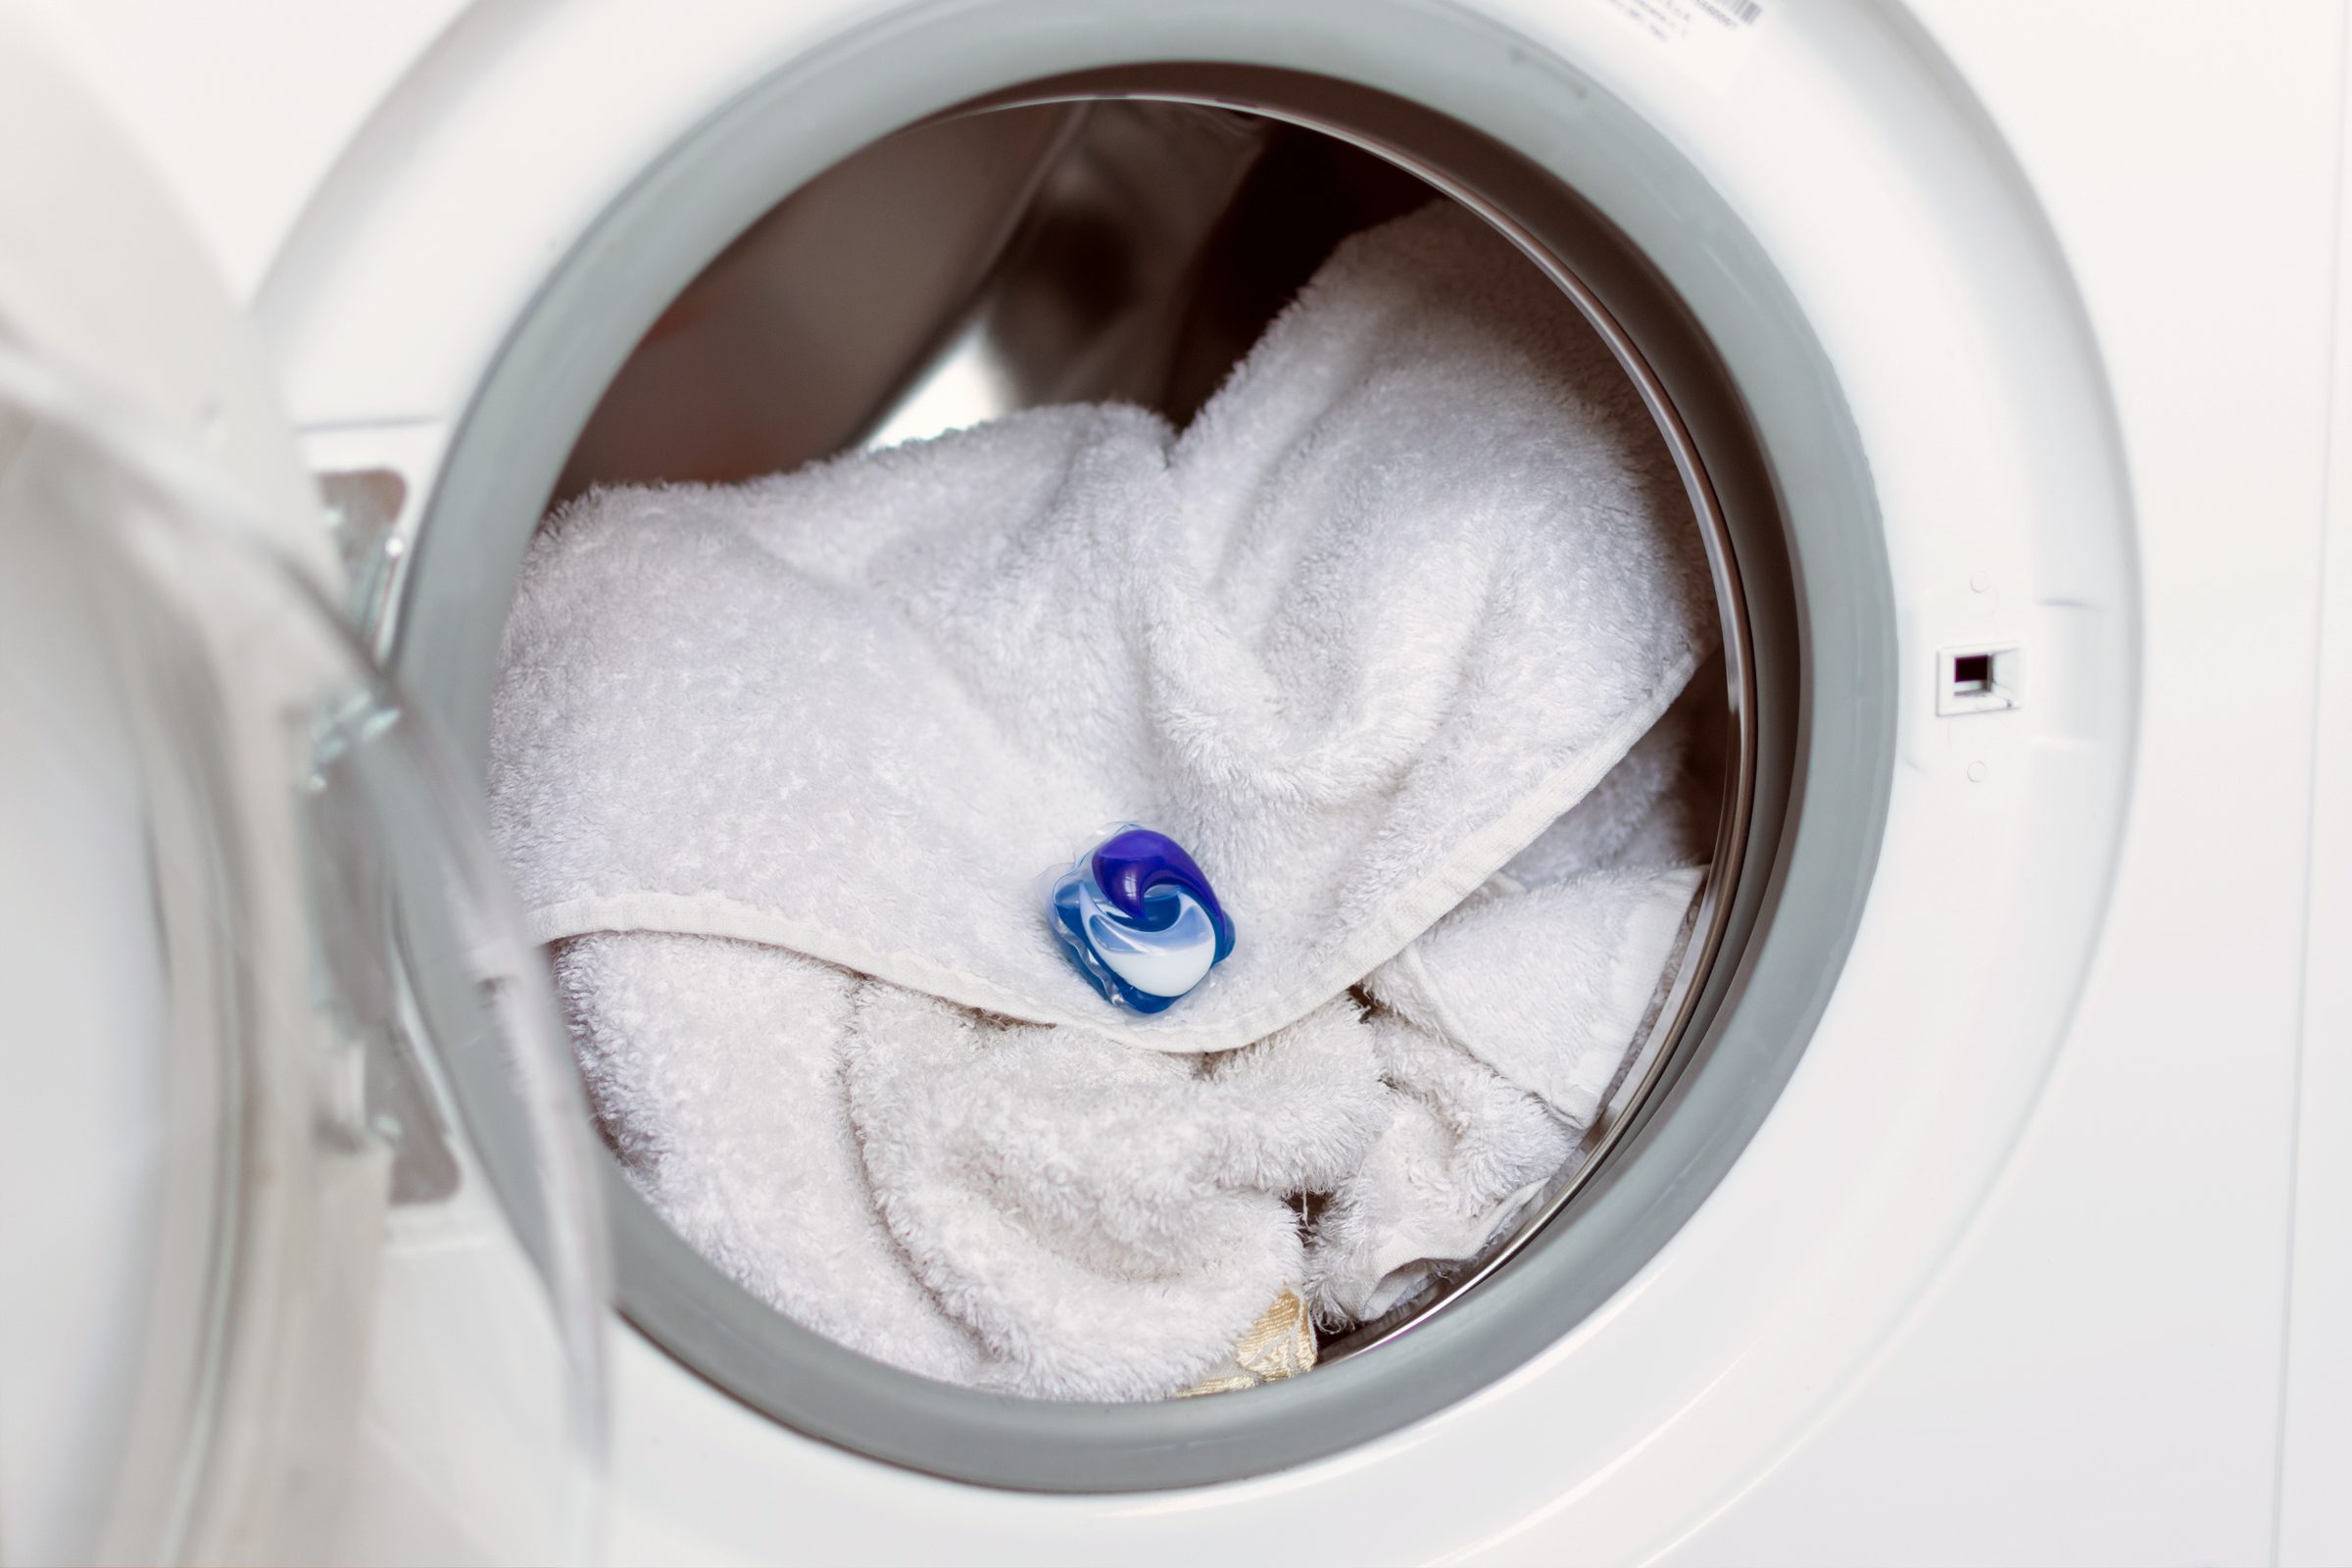 laundry detergent pod in washing machine